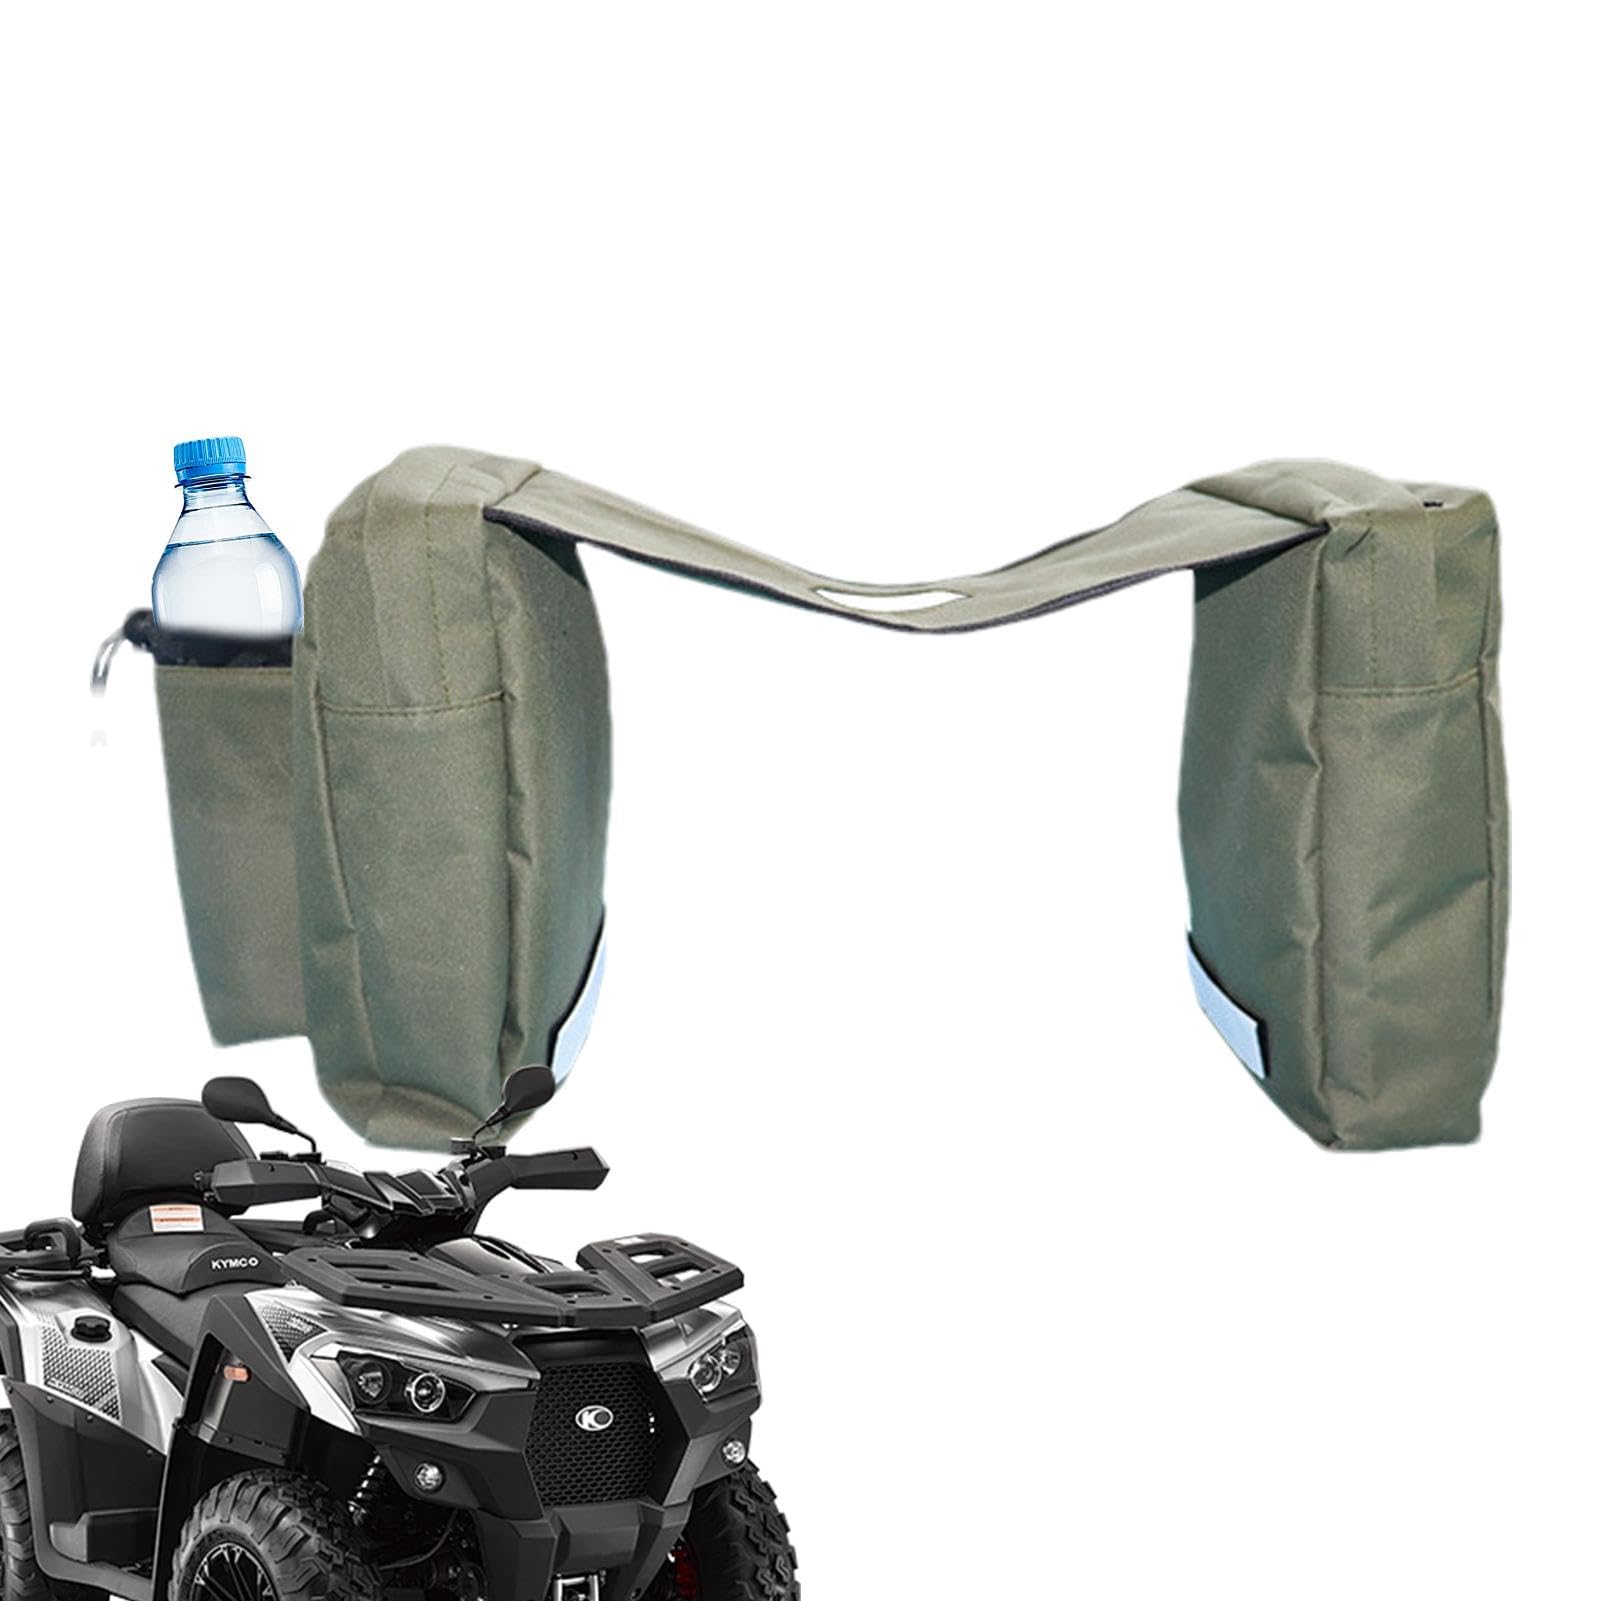 Kuxiptin Motorrad-Tanktasche, Motorrad-Tanktasche | Motorradtasche Aufbewahrungstasche für Motorrad – sichere Motorradtasche für Rücksitz, Handytasche, Motorrad-Tanktasche von Kuxiptin